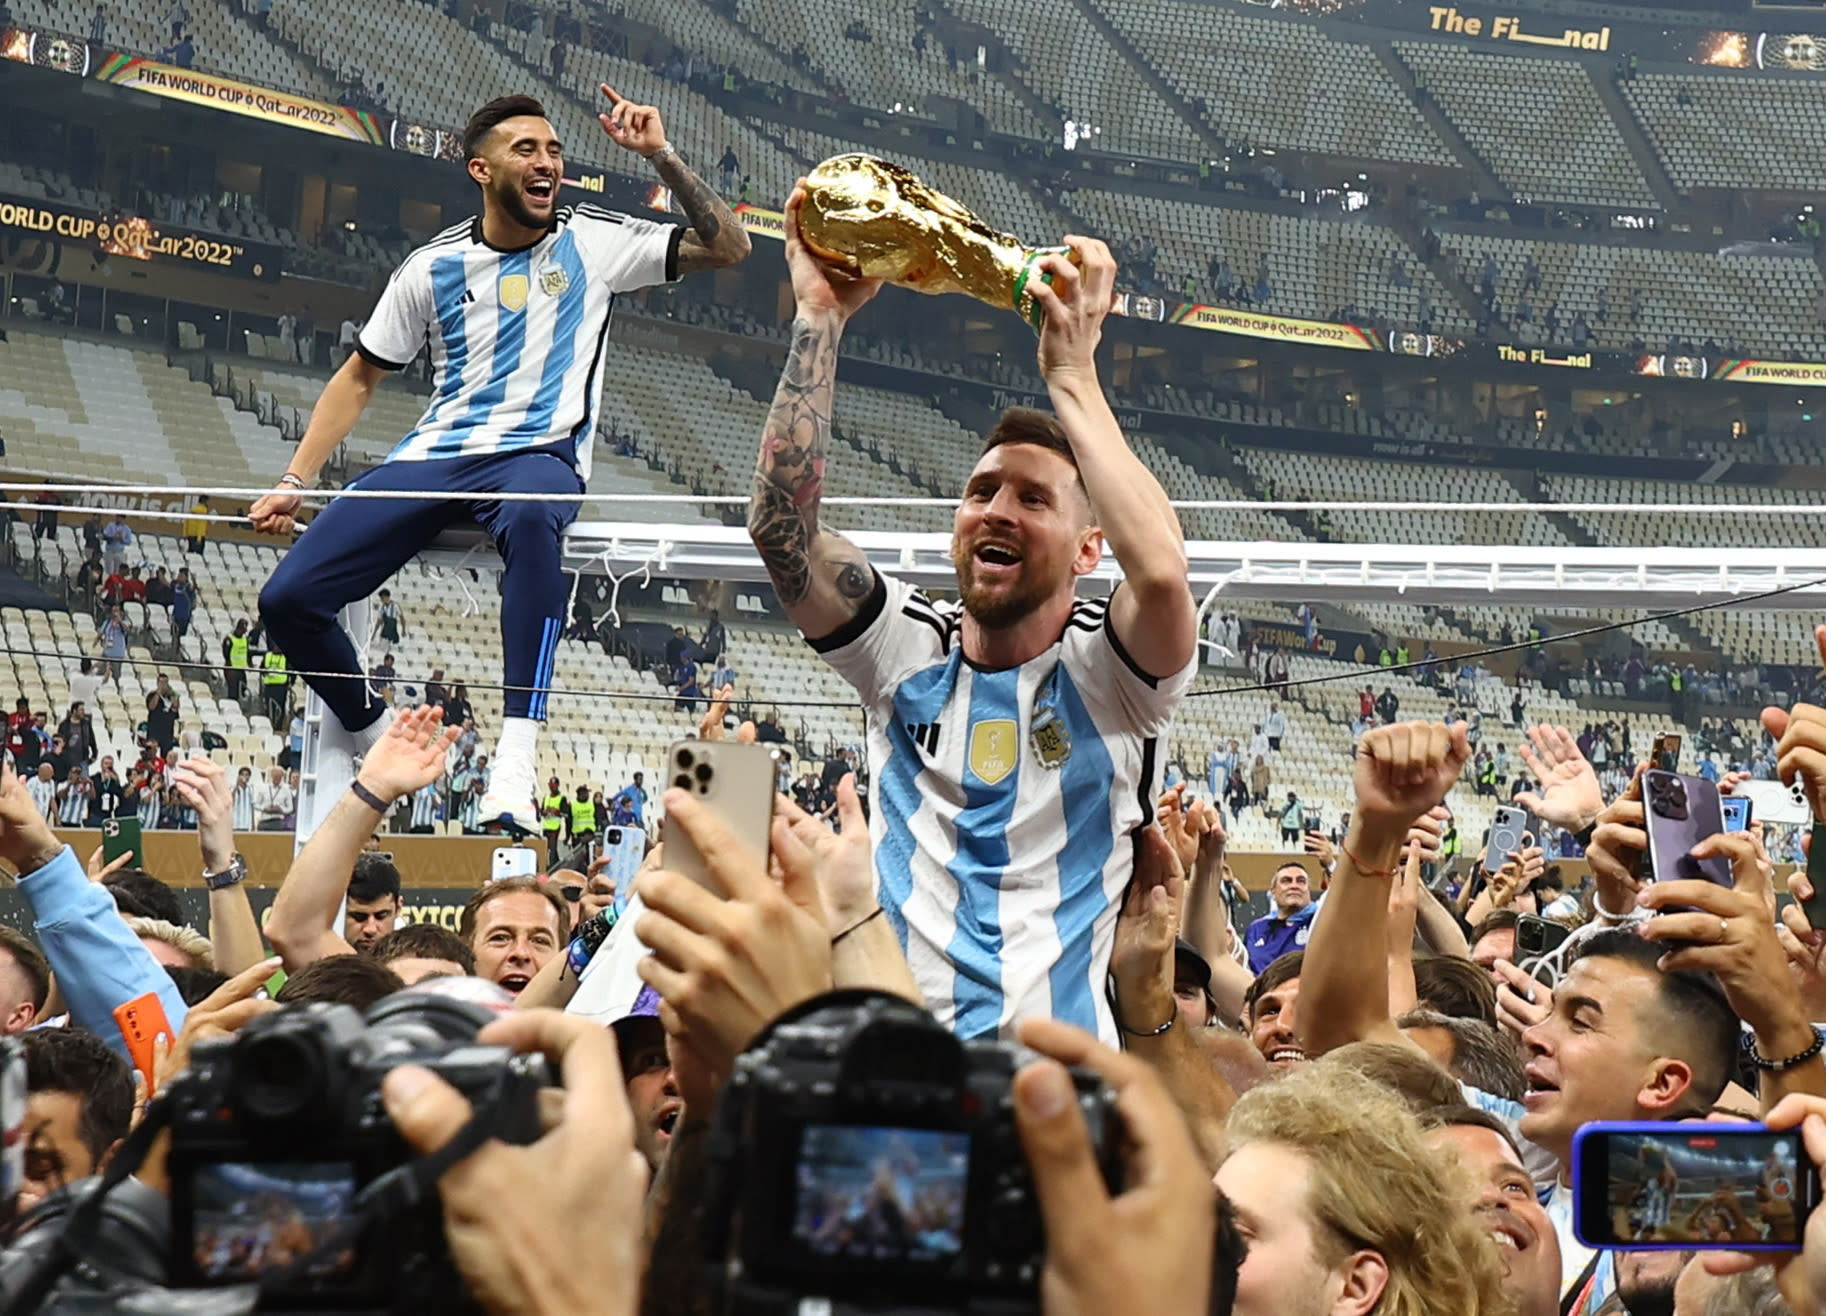 ליאונל מסי, שחקן נבחרת ארגנטינה, עם גביע העולם במונדיאל 2022